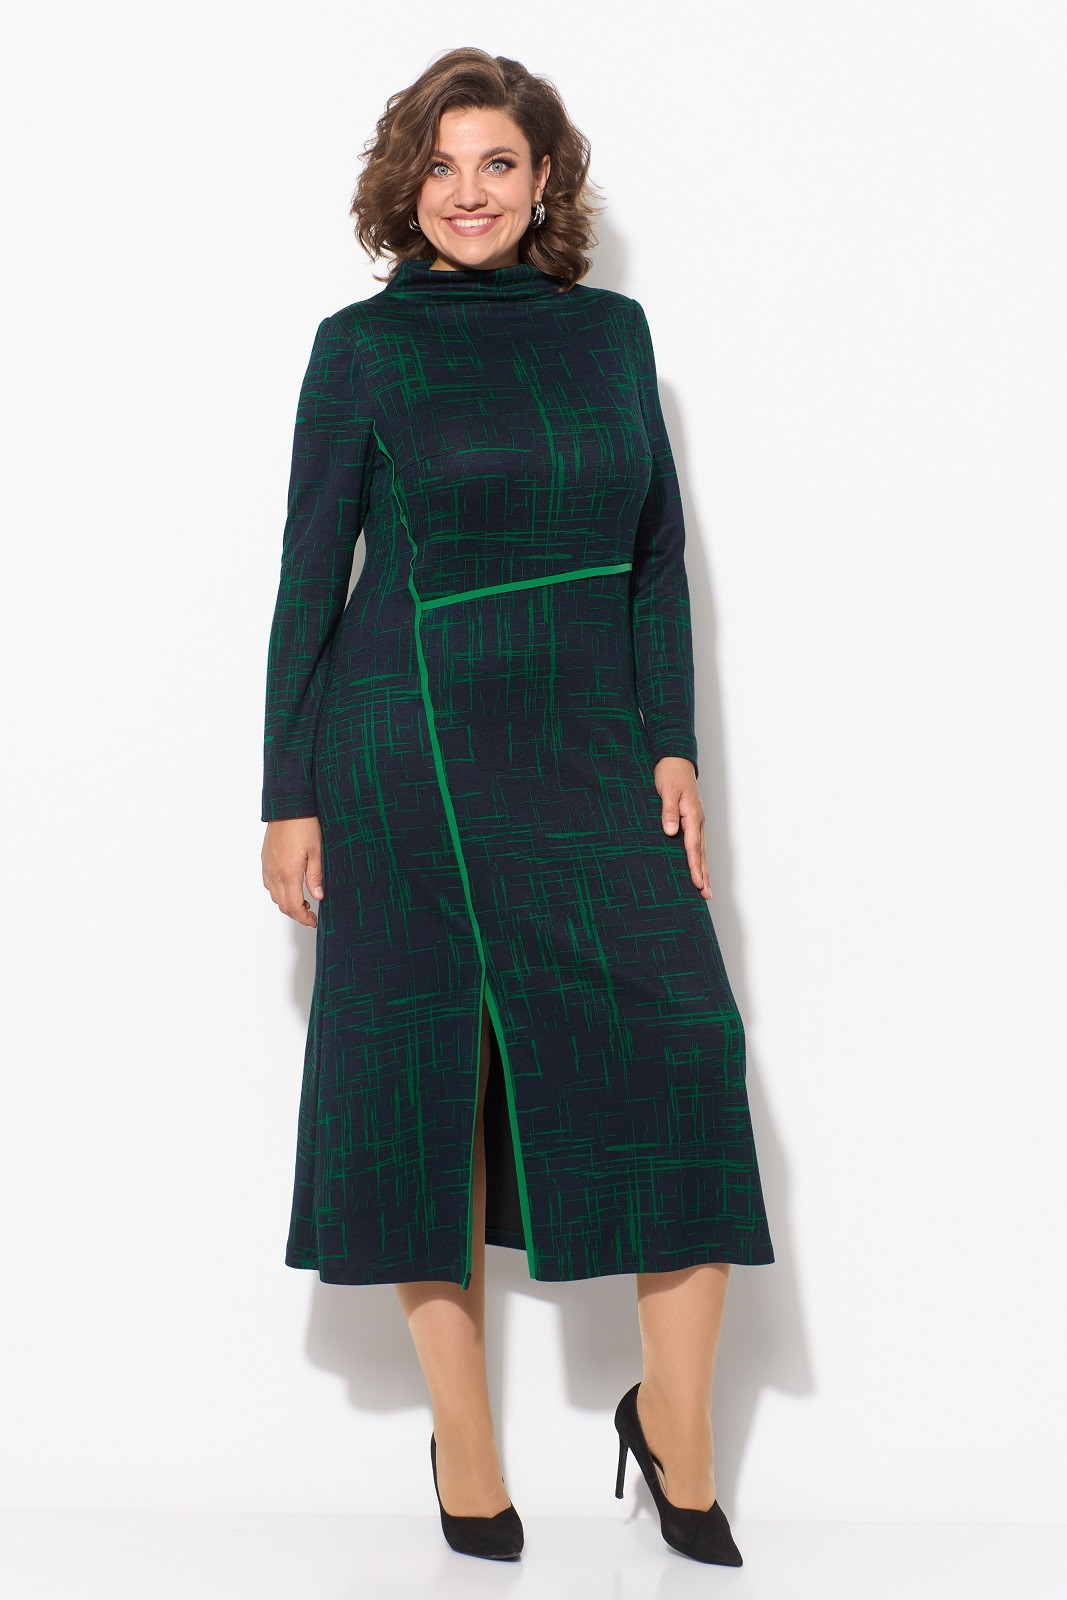 Платье Кокетка и К 1087 черный+зеленый